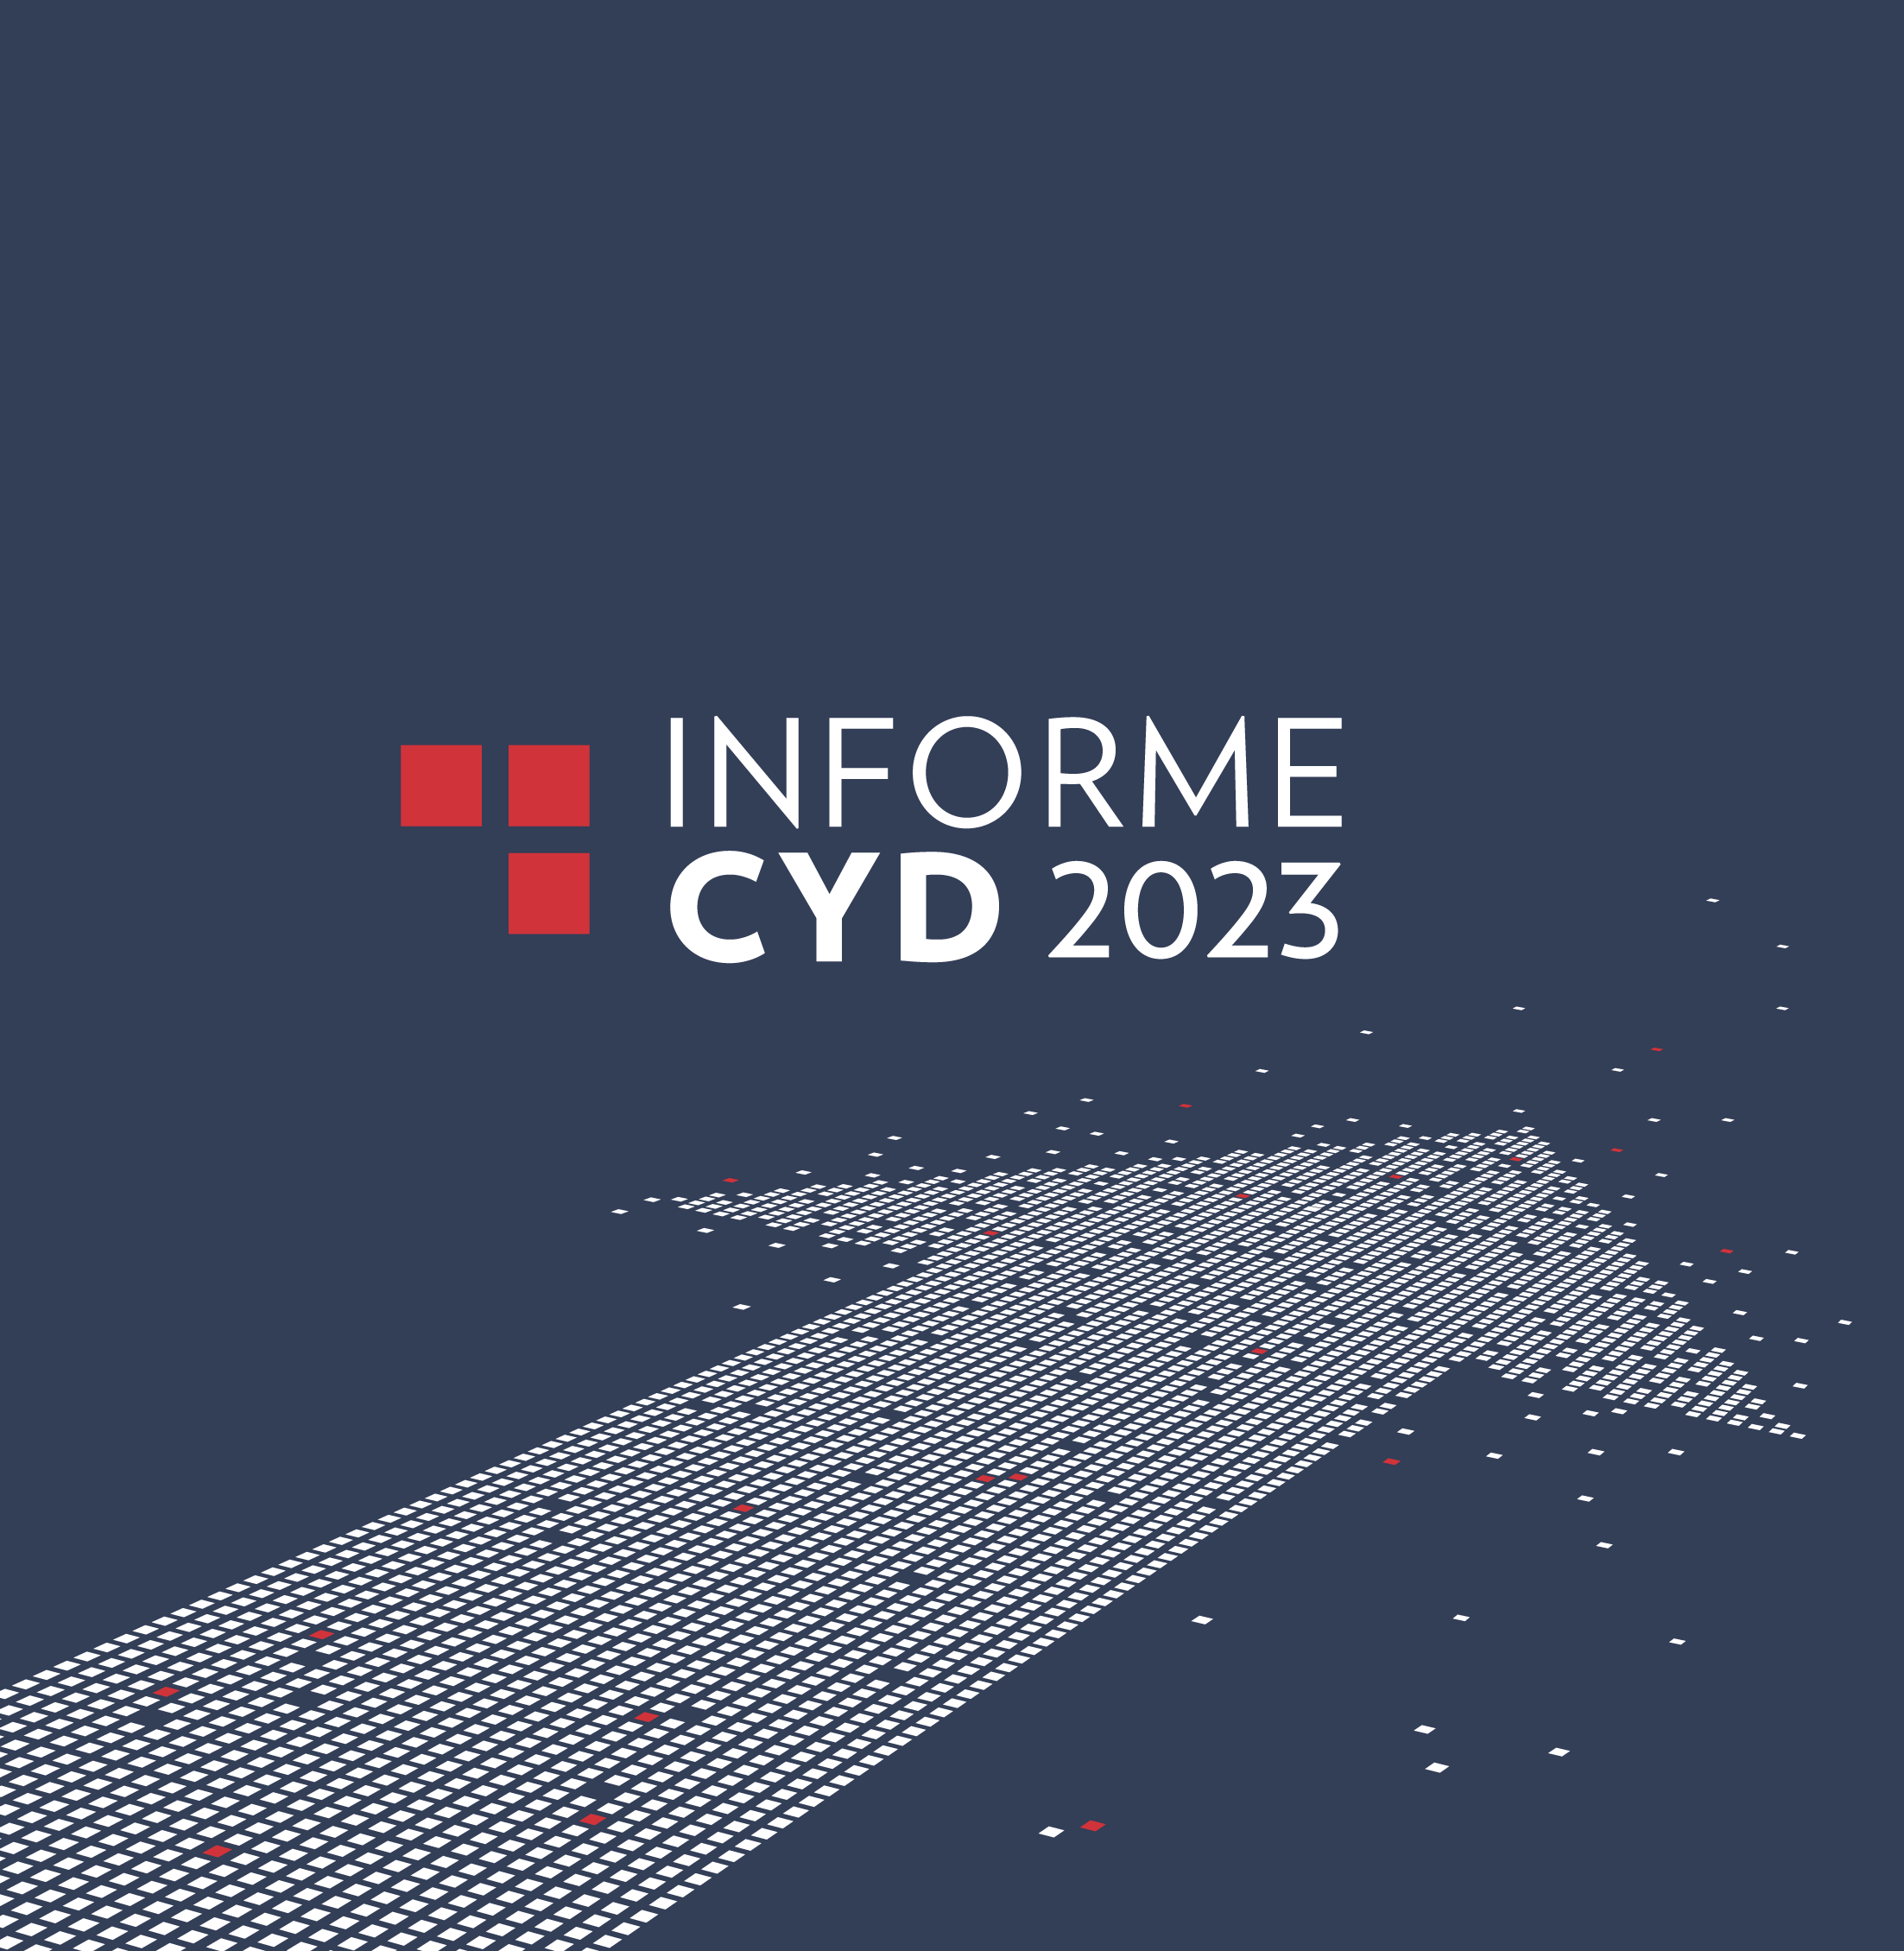 Informe CYD 2023